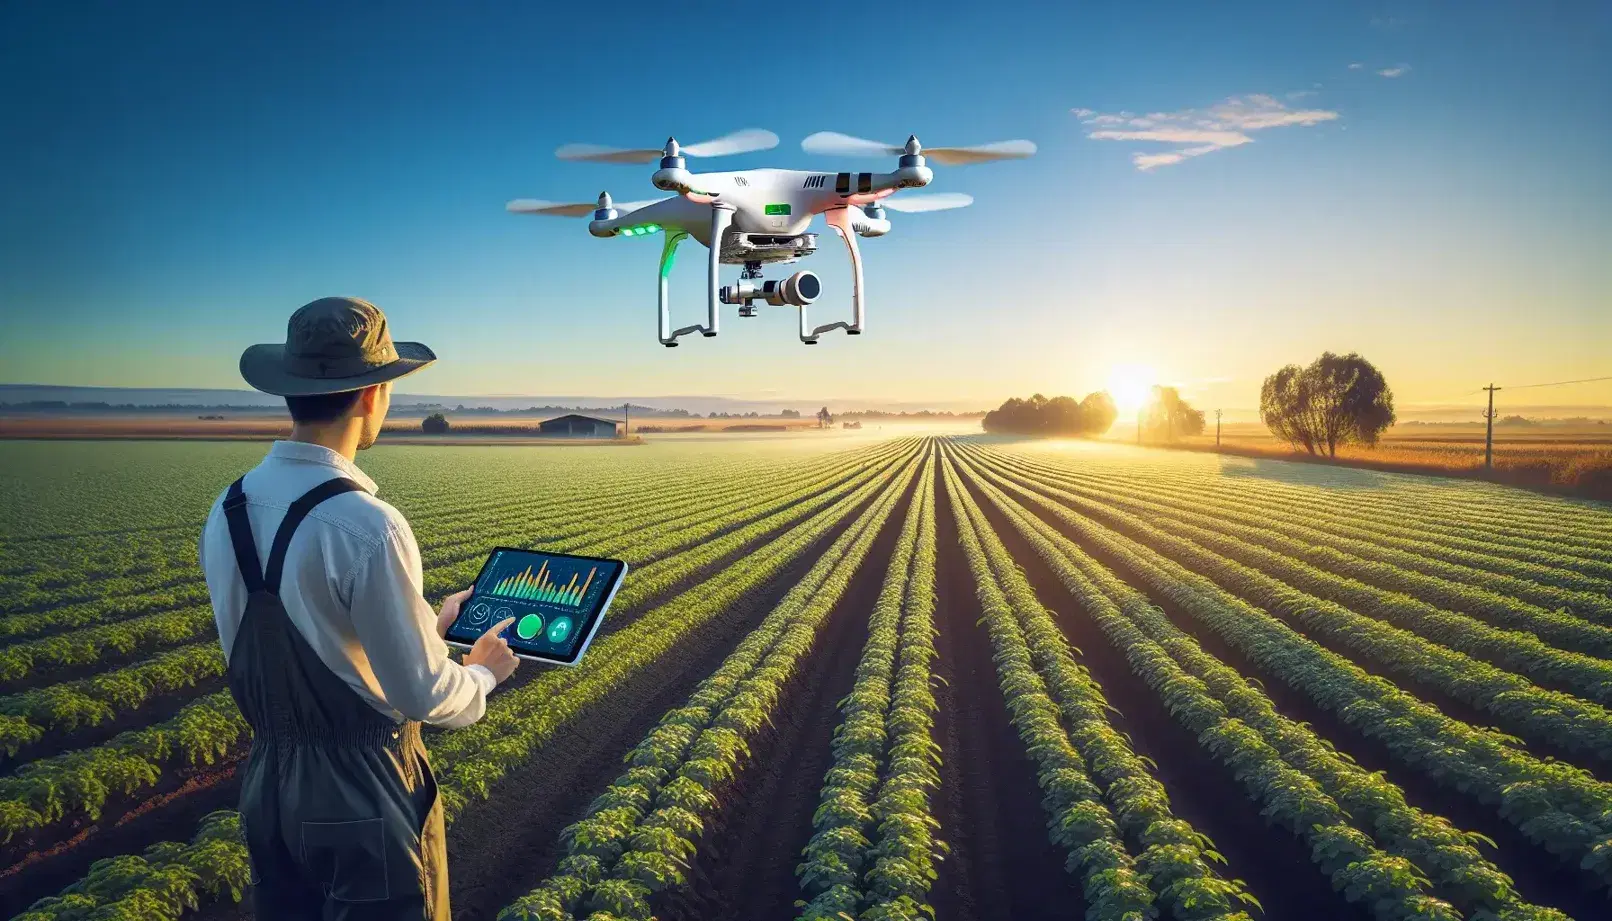 Campo agrícola con cultivos verdes y dron sobrevolando para monitoreo, bajo cielo azul, con agricultor manejando tableta a la derecha.